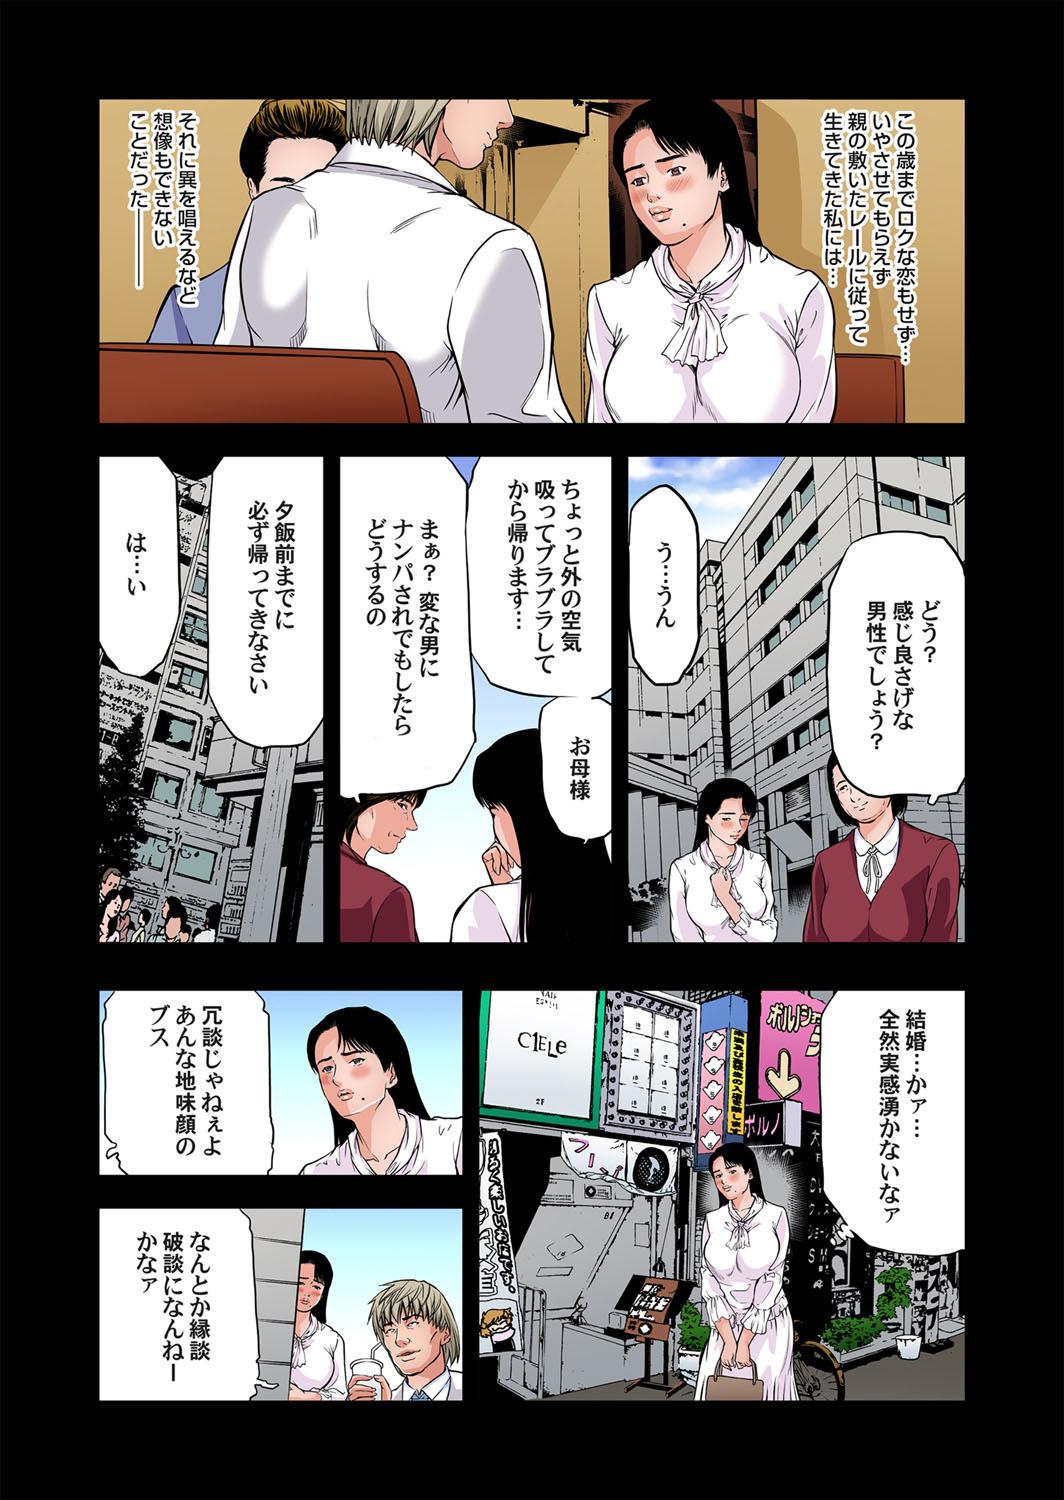 Yokkyuu Fuman no Hitozuma wa Onsen Ryokan de Hageshiku Modaeru 28-35 58